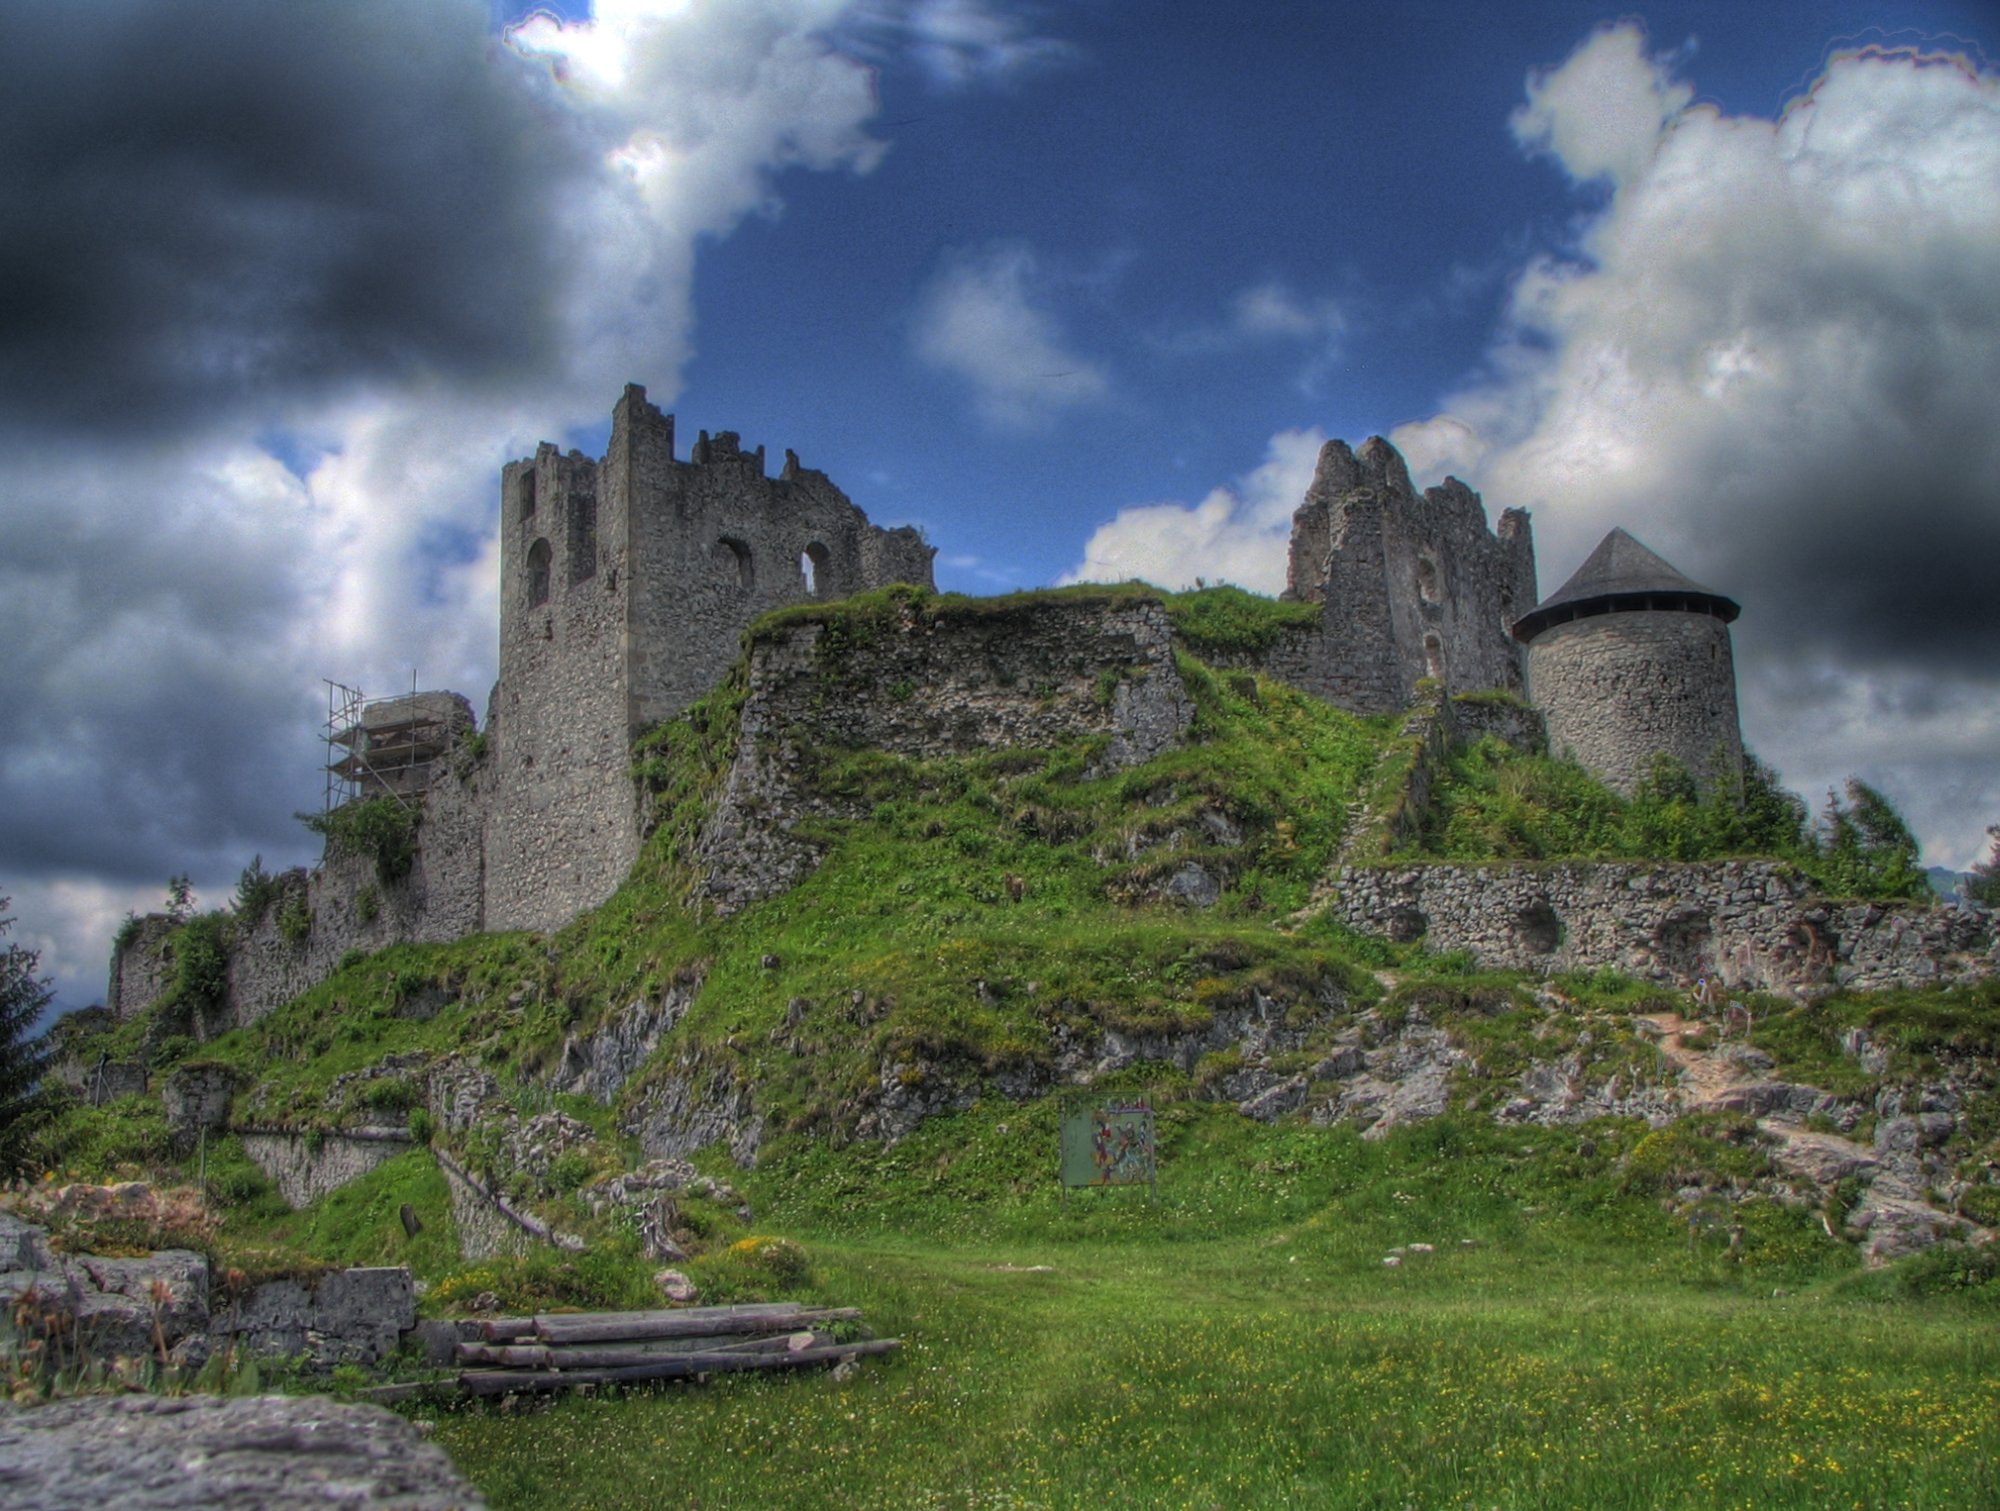 castles, ruins, architecture, buildings, HDR photography - desktop wallpaper